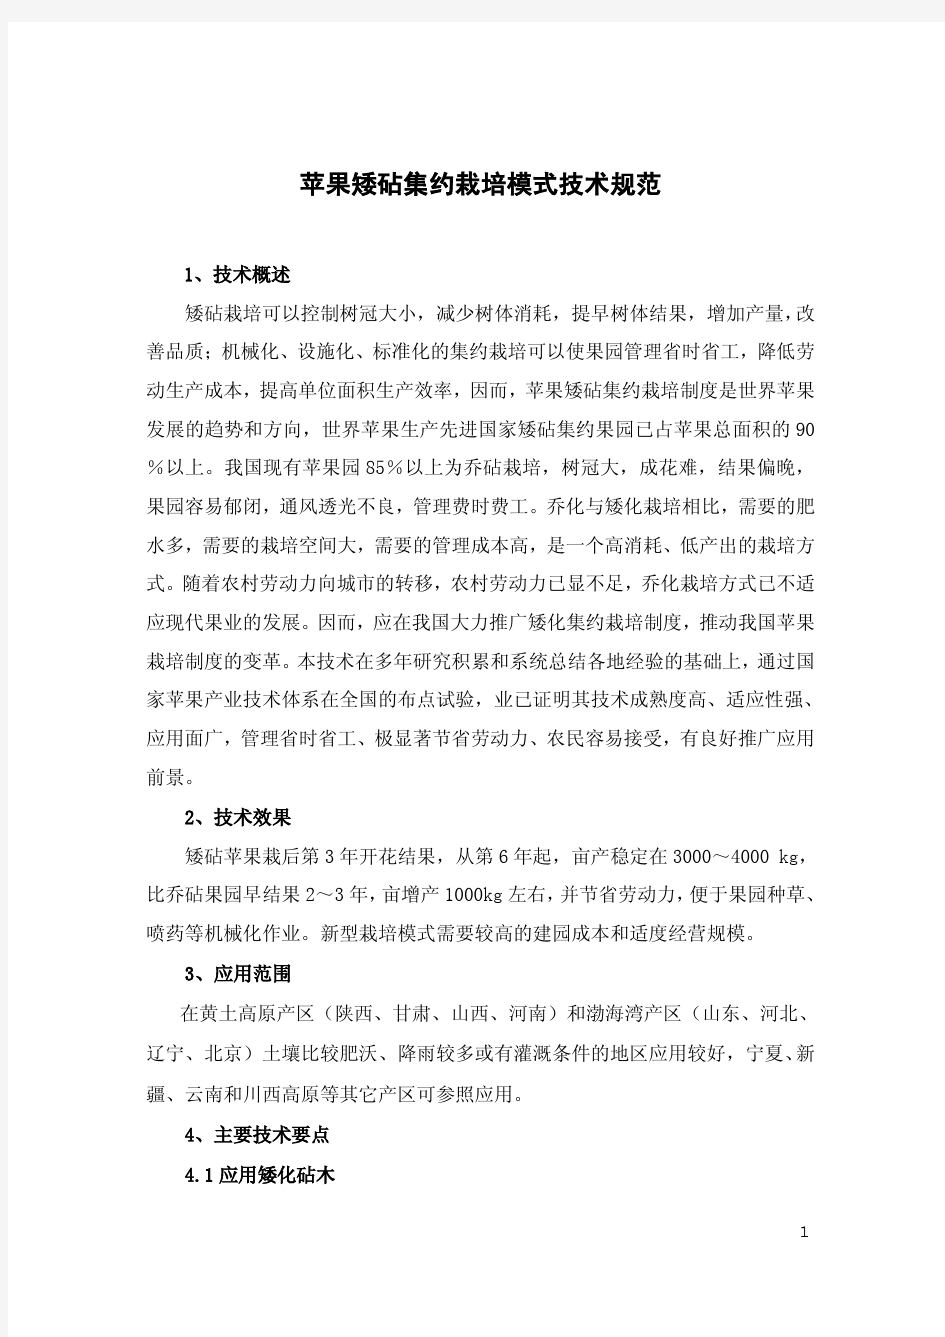 2013-11-17苹果矮砧集约栽培模式技术规范(定稿)